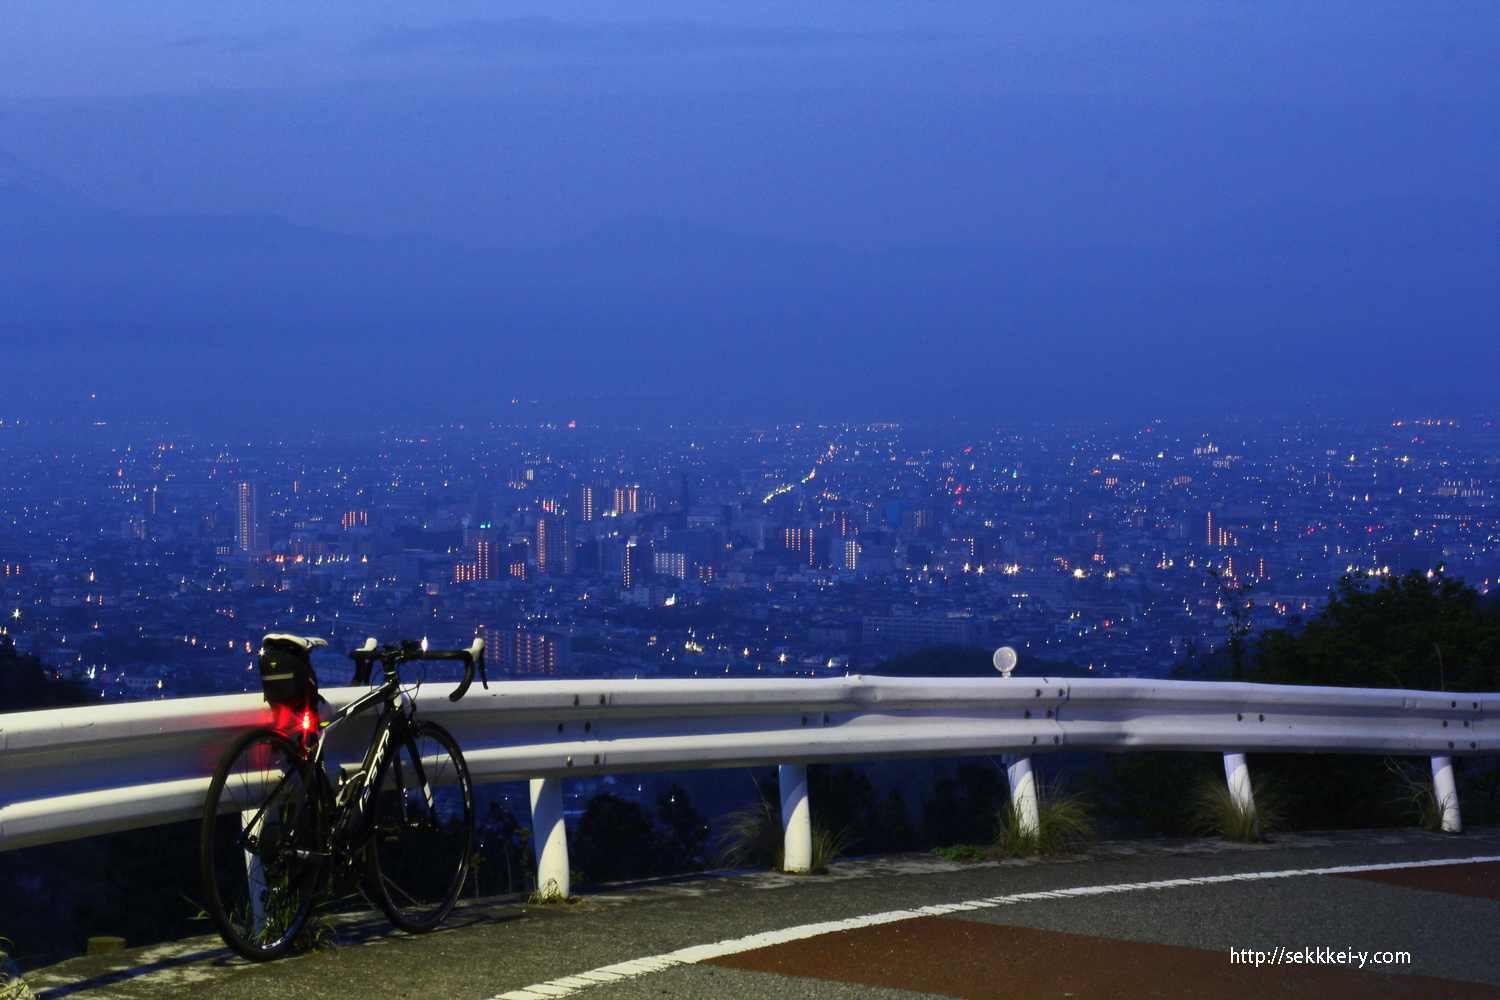 和田峠から見た夜明けの甲府盆地